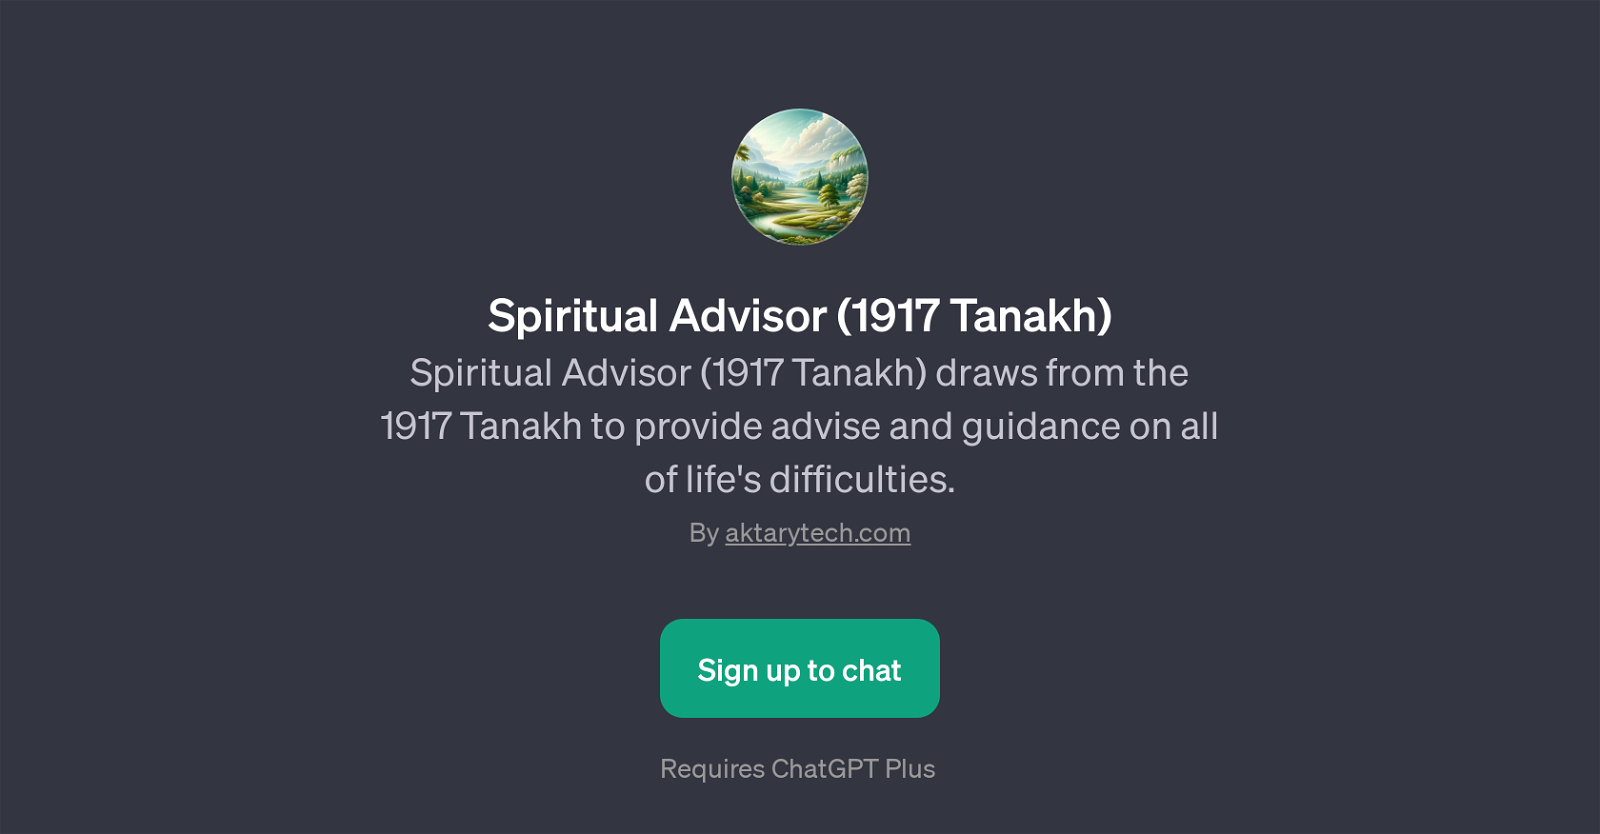 Spiritual Advisor (1917 Tanakh) website